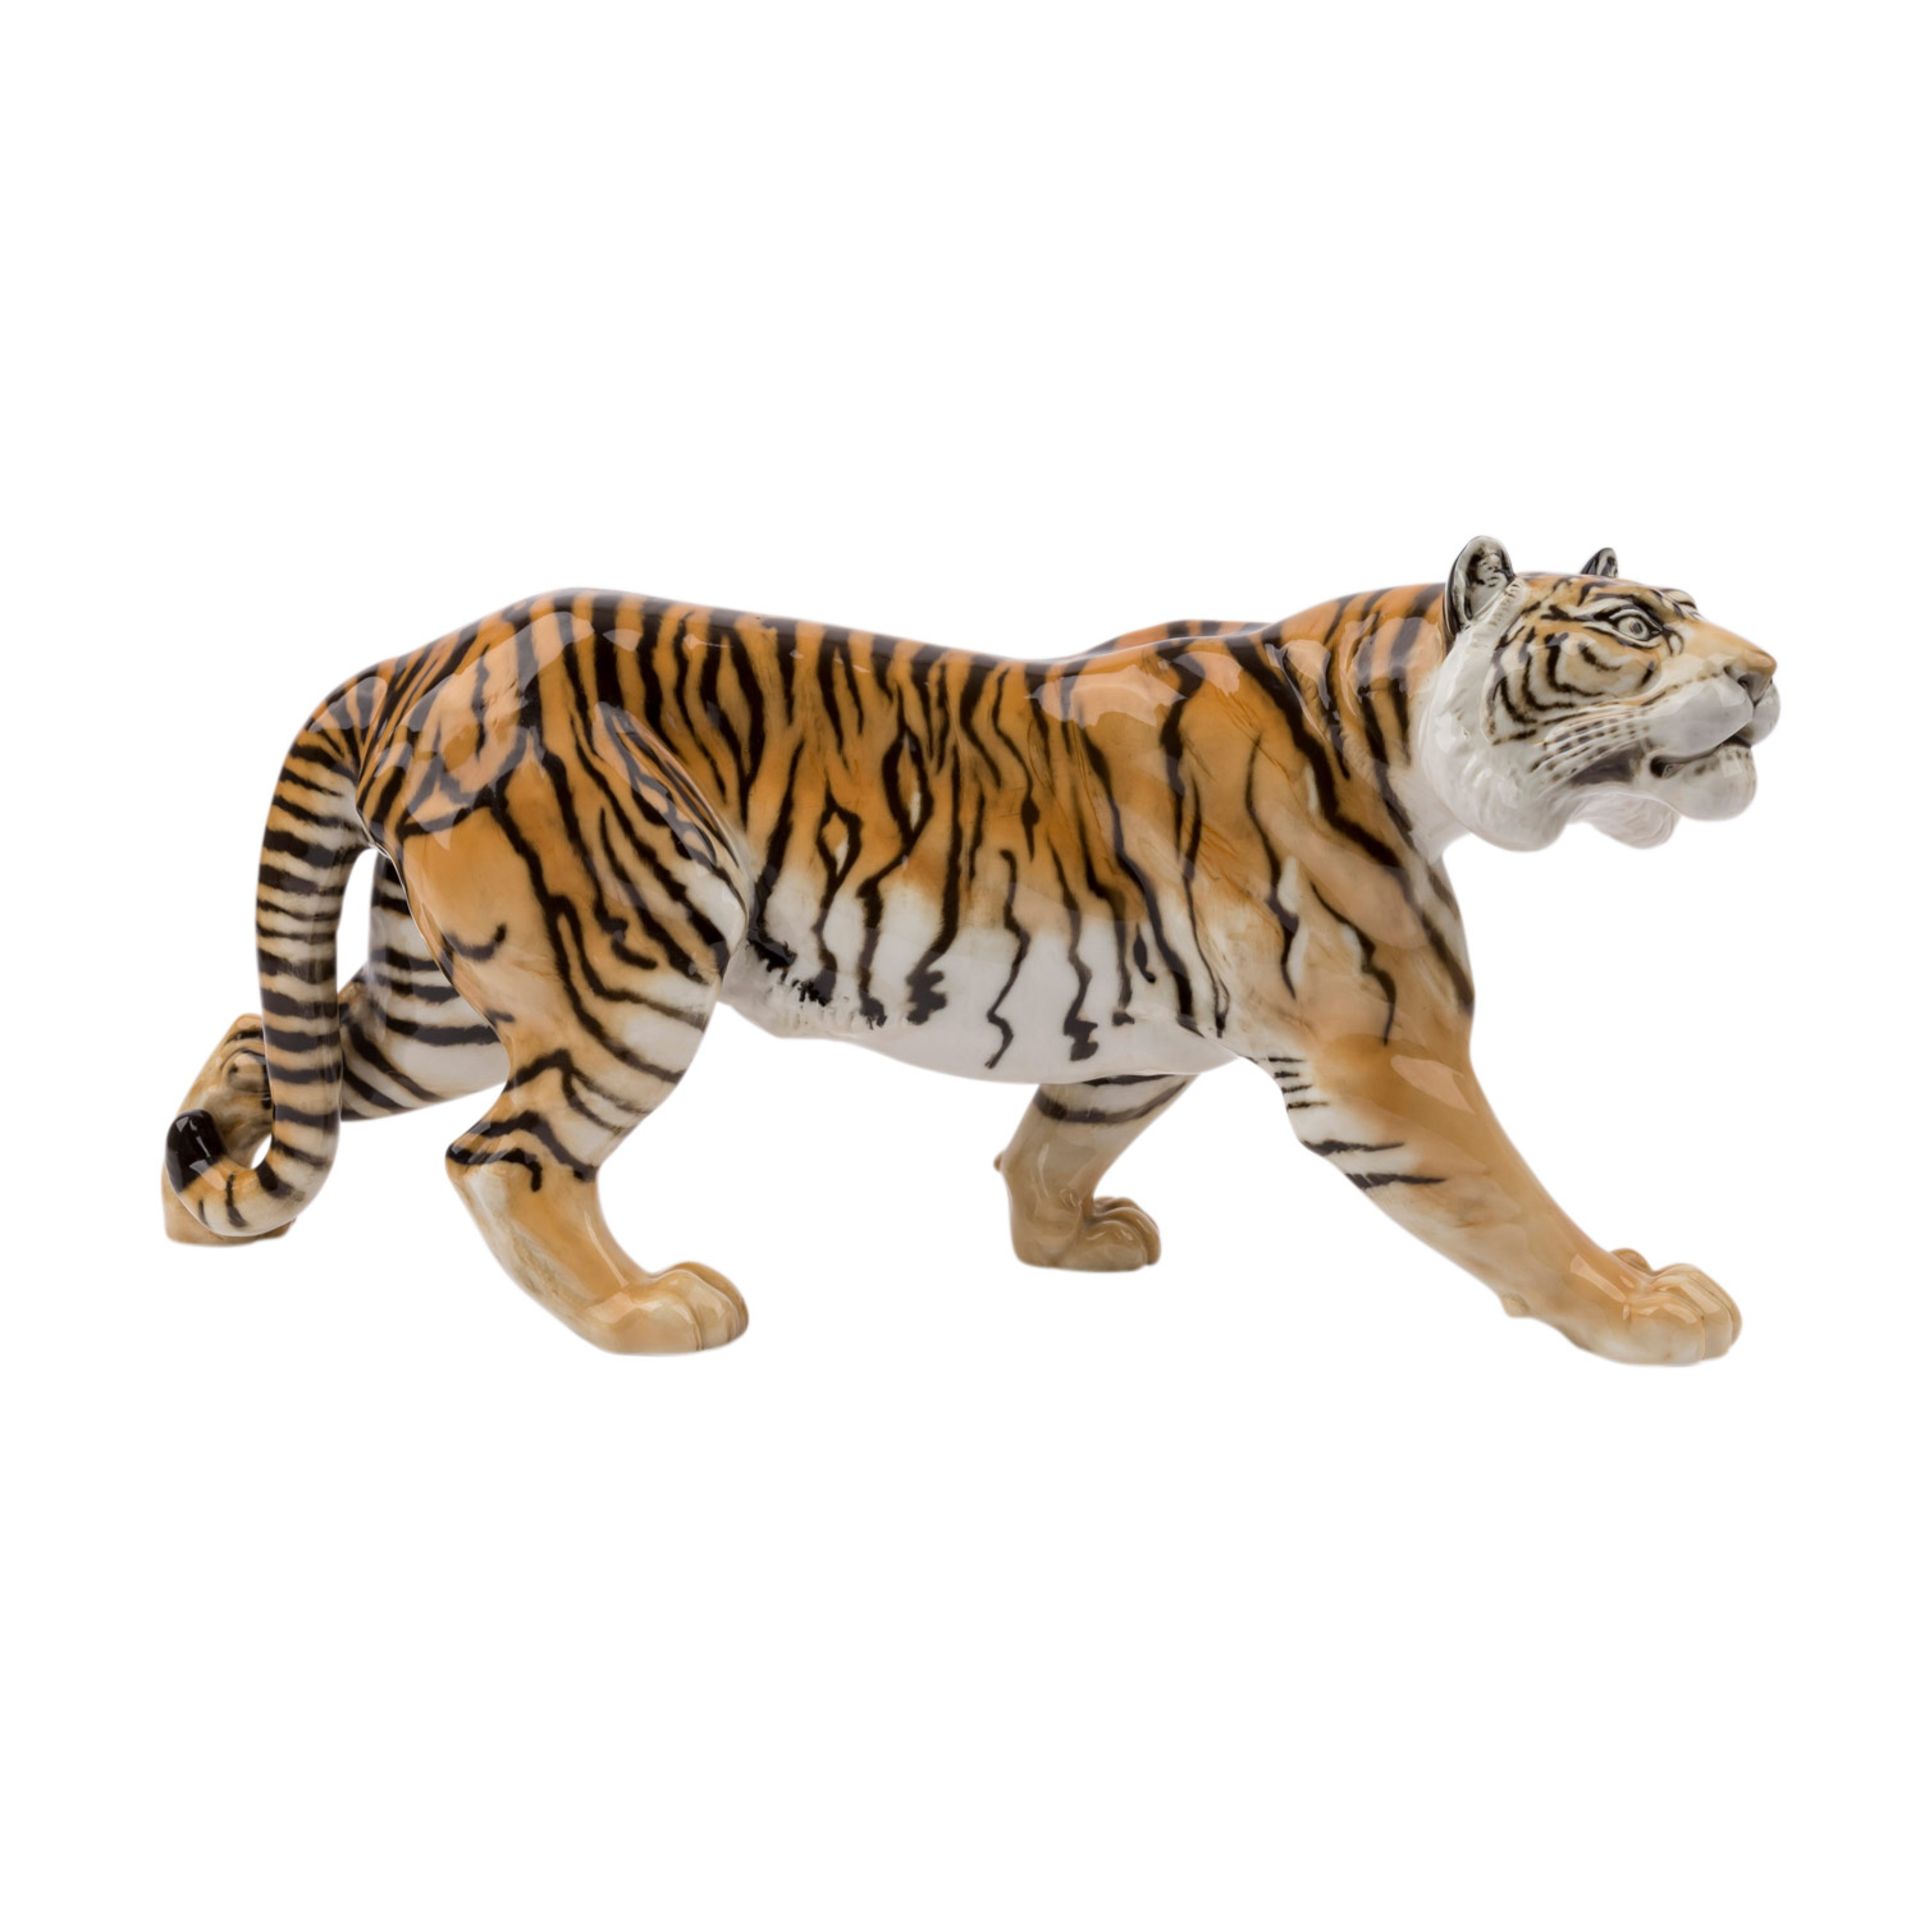 HUTSCHENREUTHER 'Schreitender Tiger', Marke nach 1982.Weißporzellan polychrom gefaßt, L. ca. 57cm. - Bild 2 aus 5